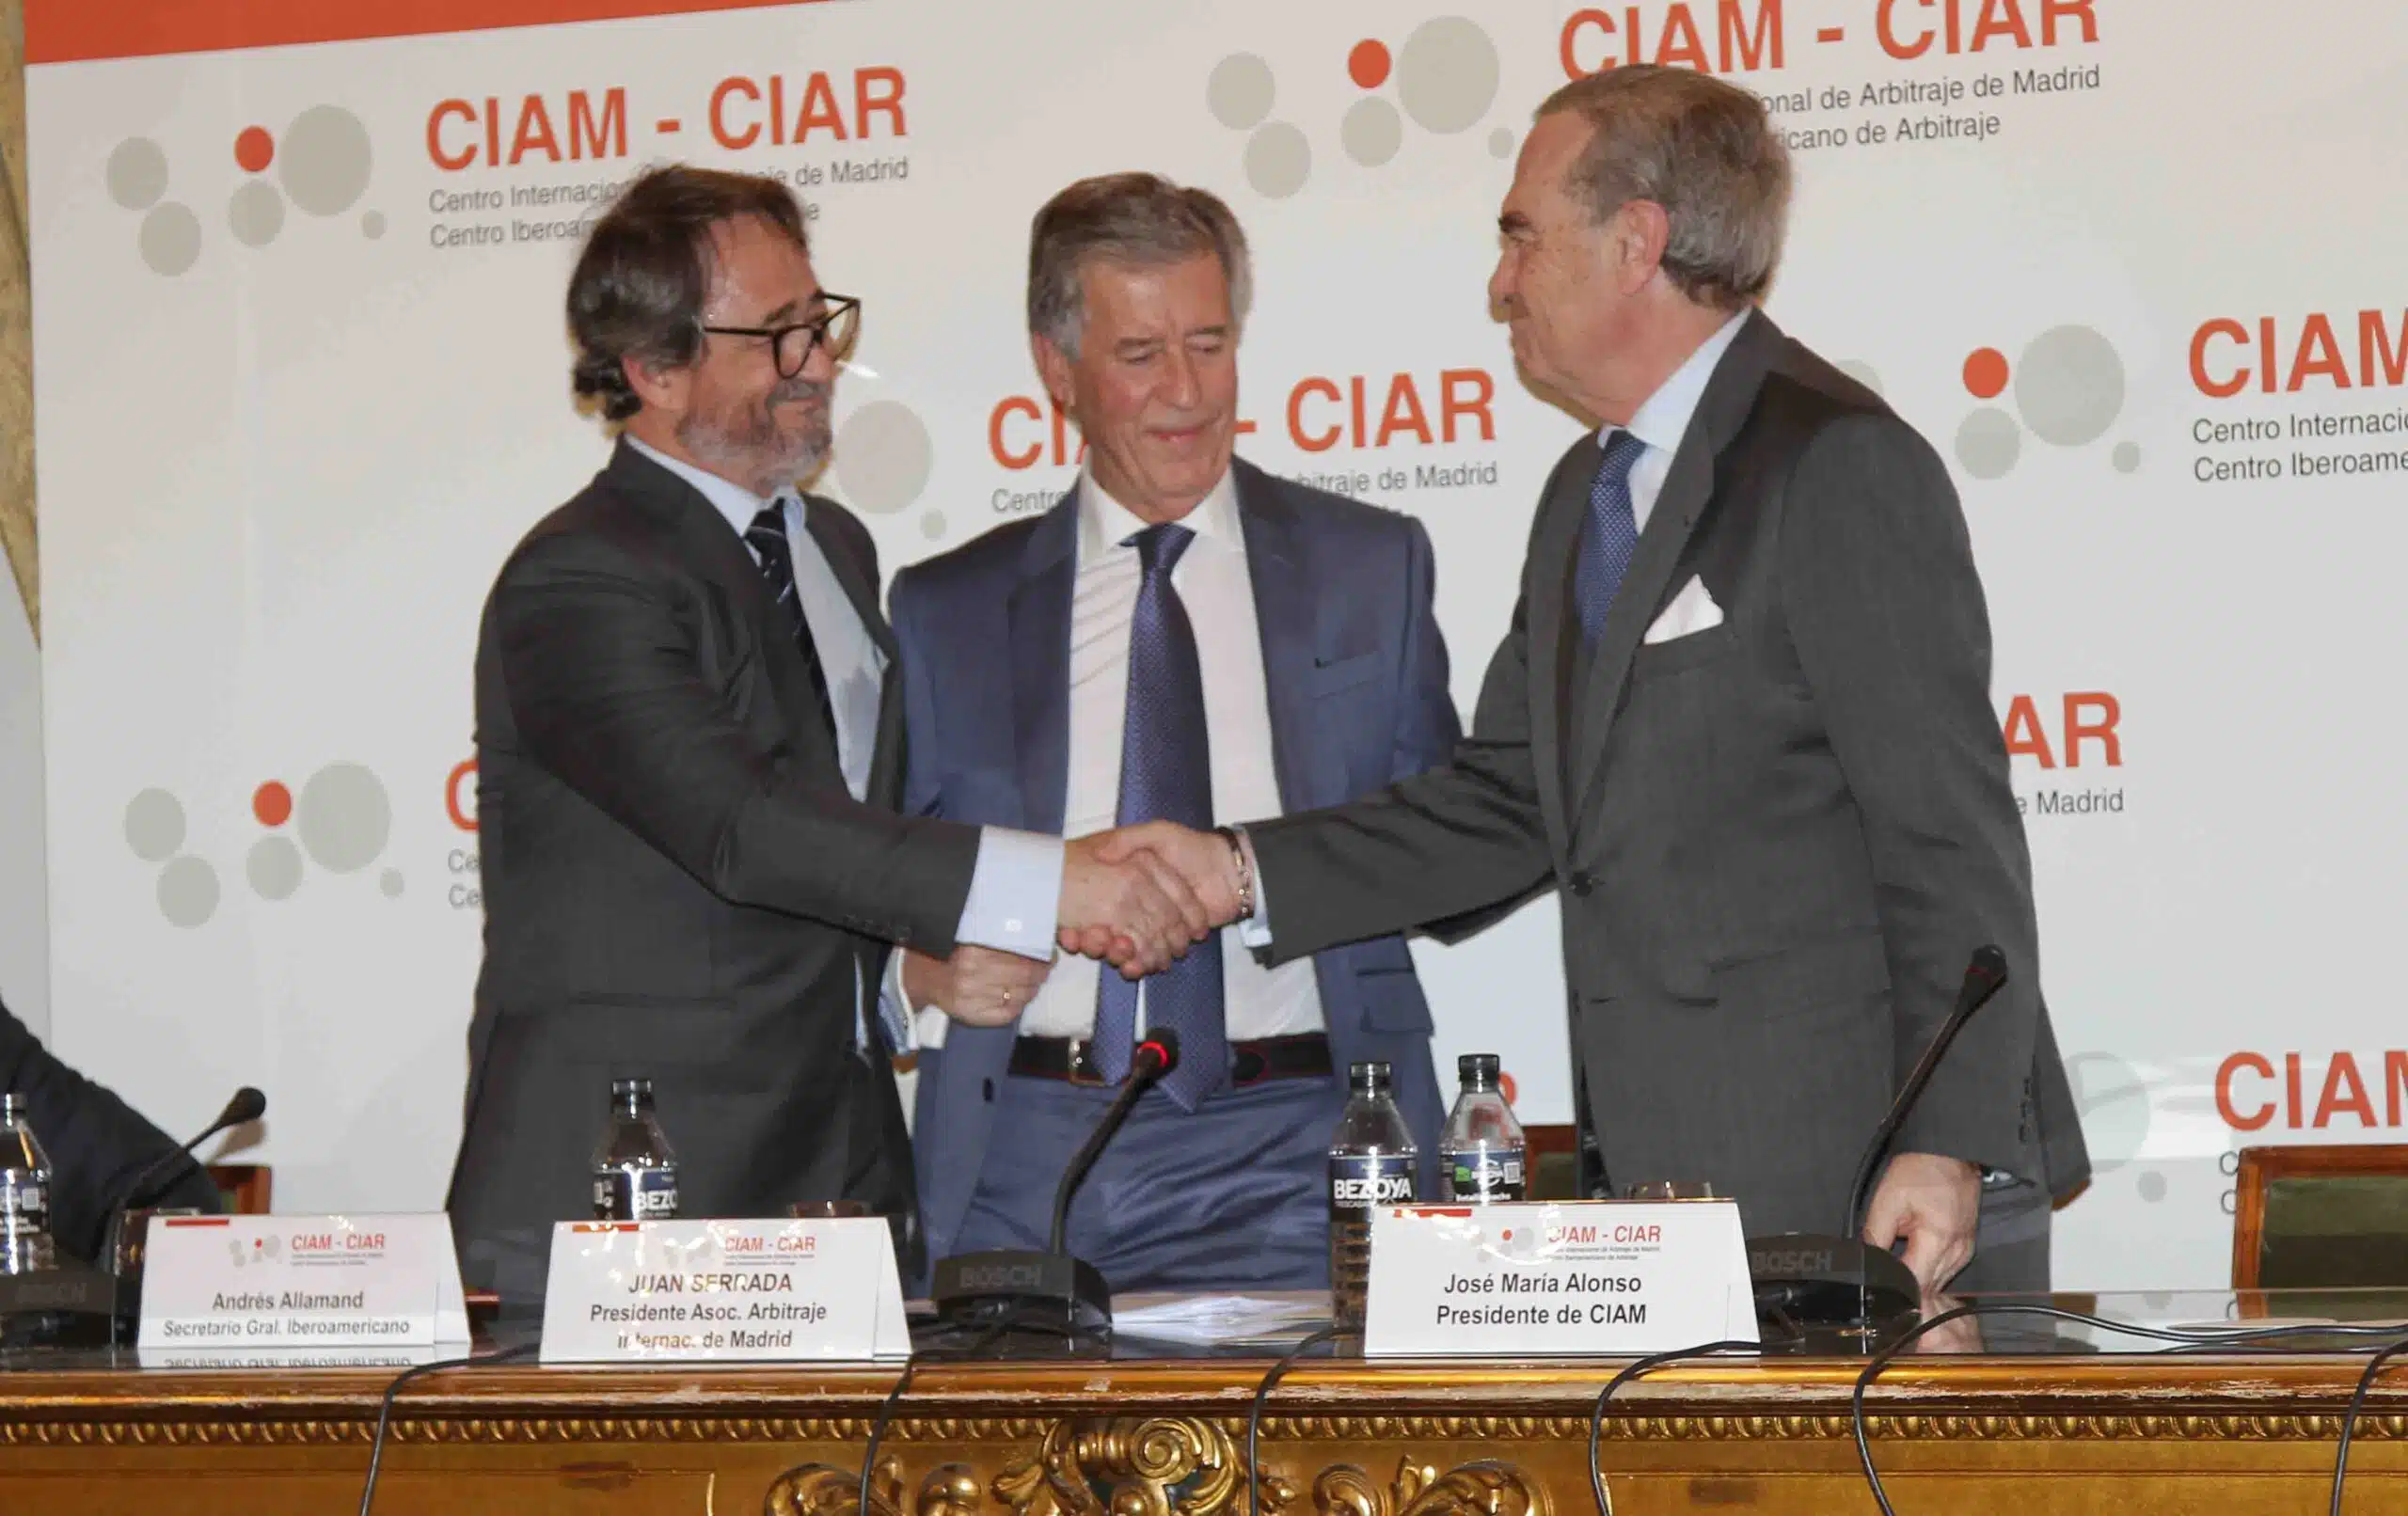 CIAM-CIAR materializan su unión para ser el centro de arbitraje internacional de referencia de Iberoamérica